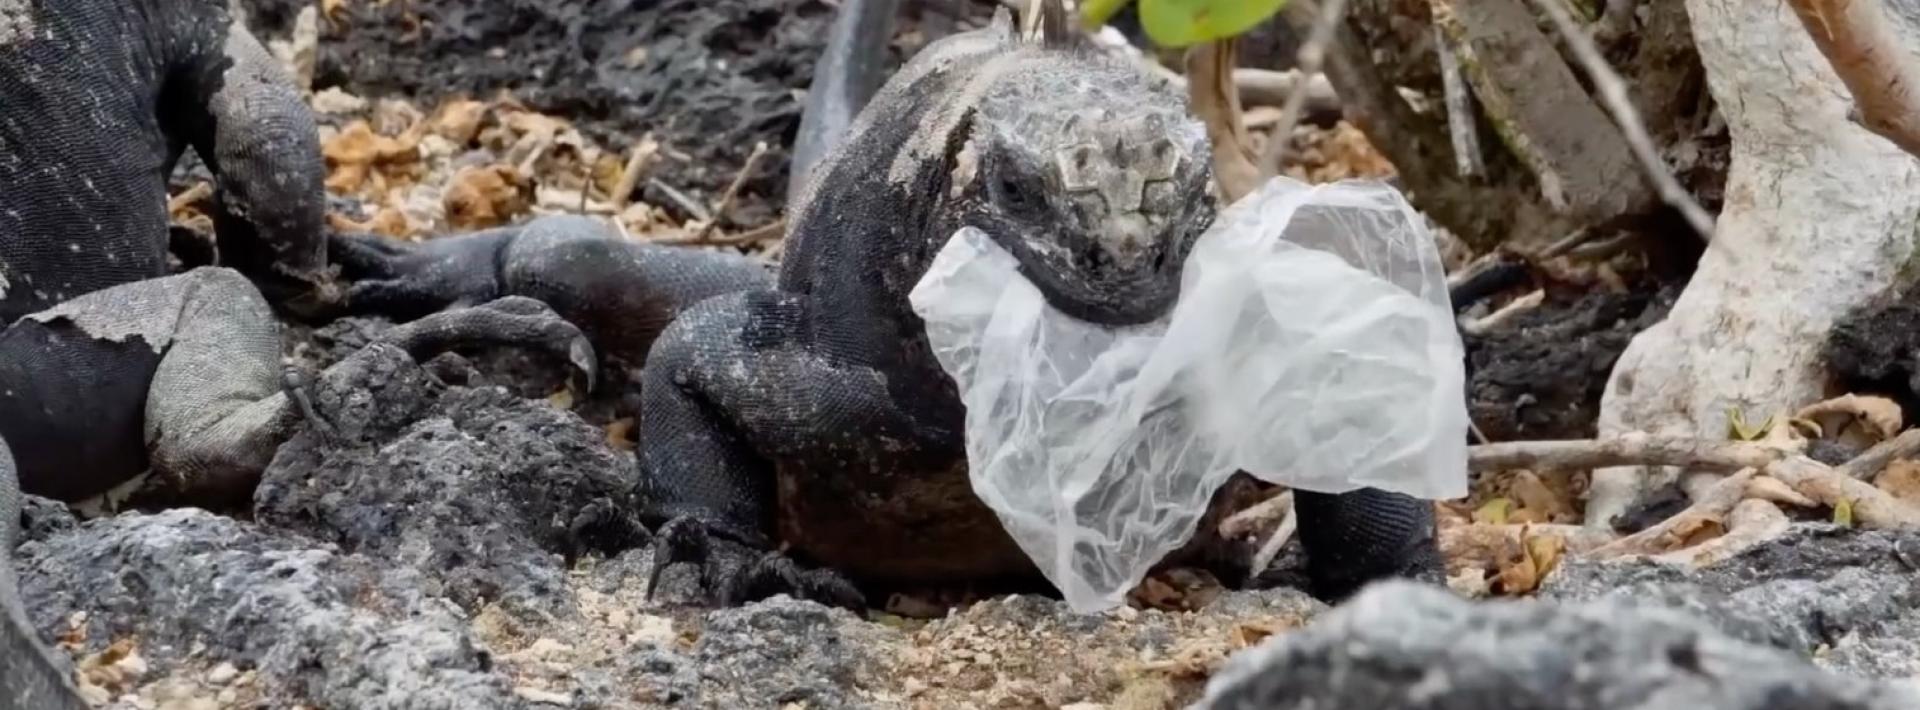 Iguana eating plastic